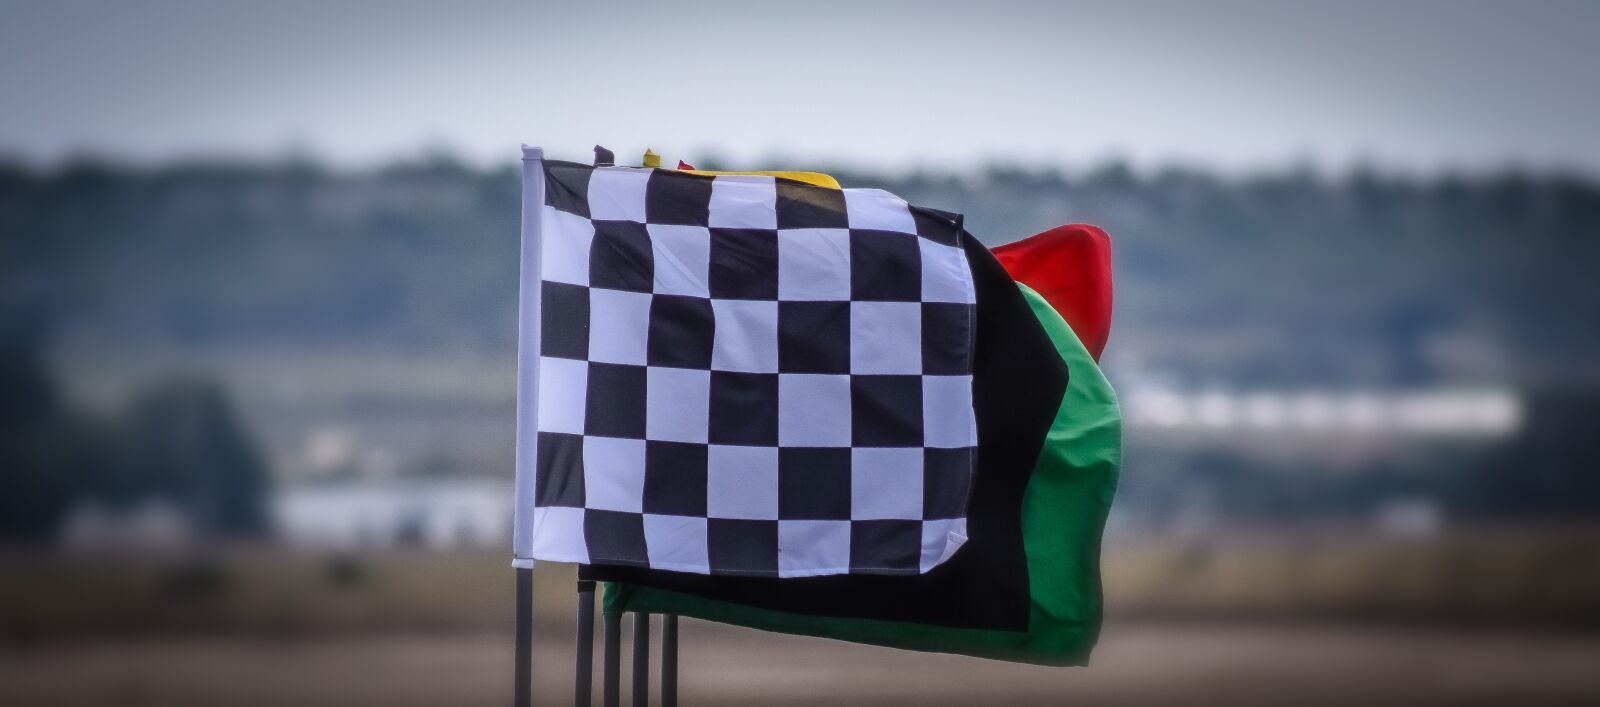 Nikon D3300 sample photo. Race flags, sport, racing photography